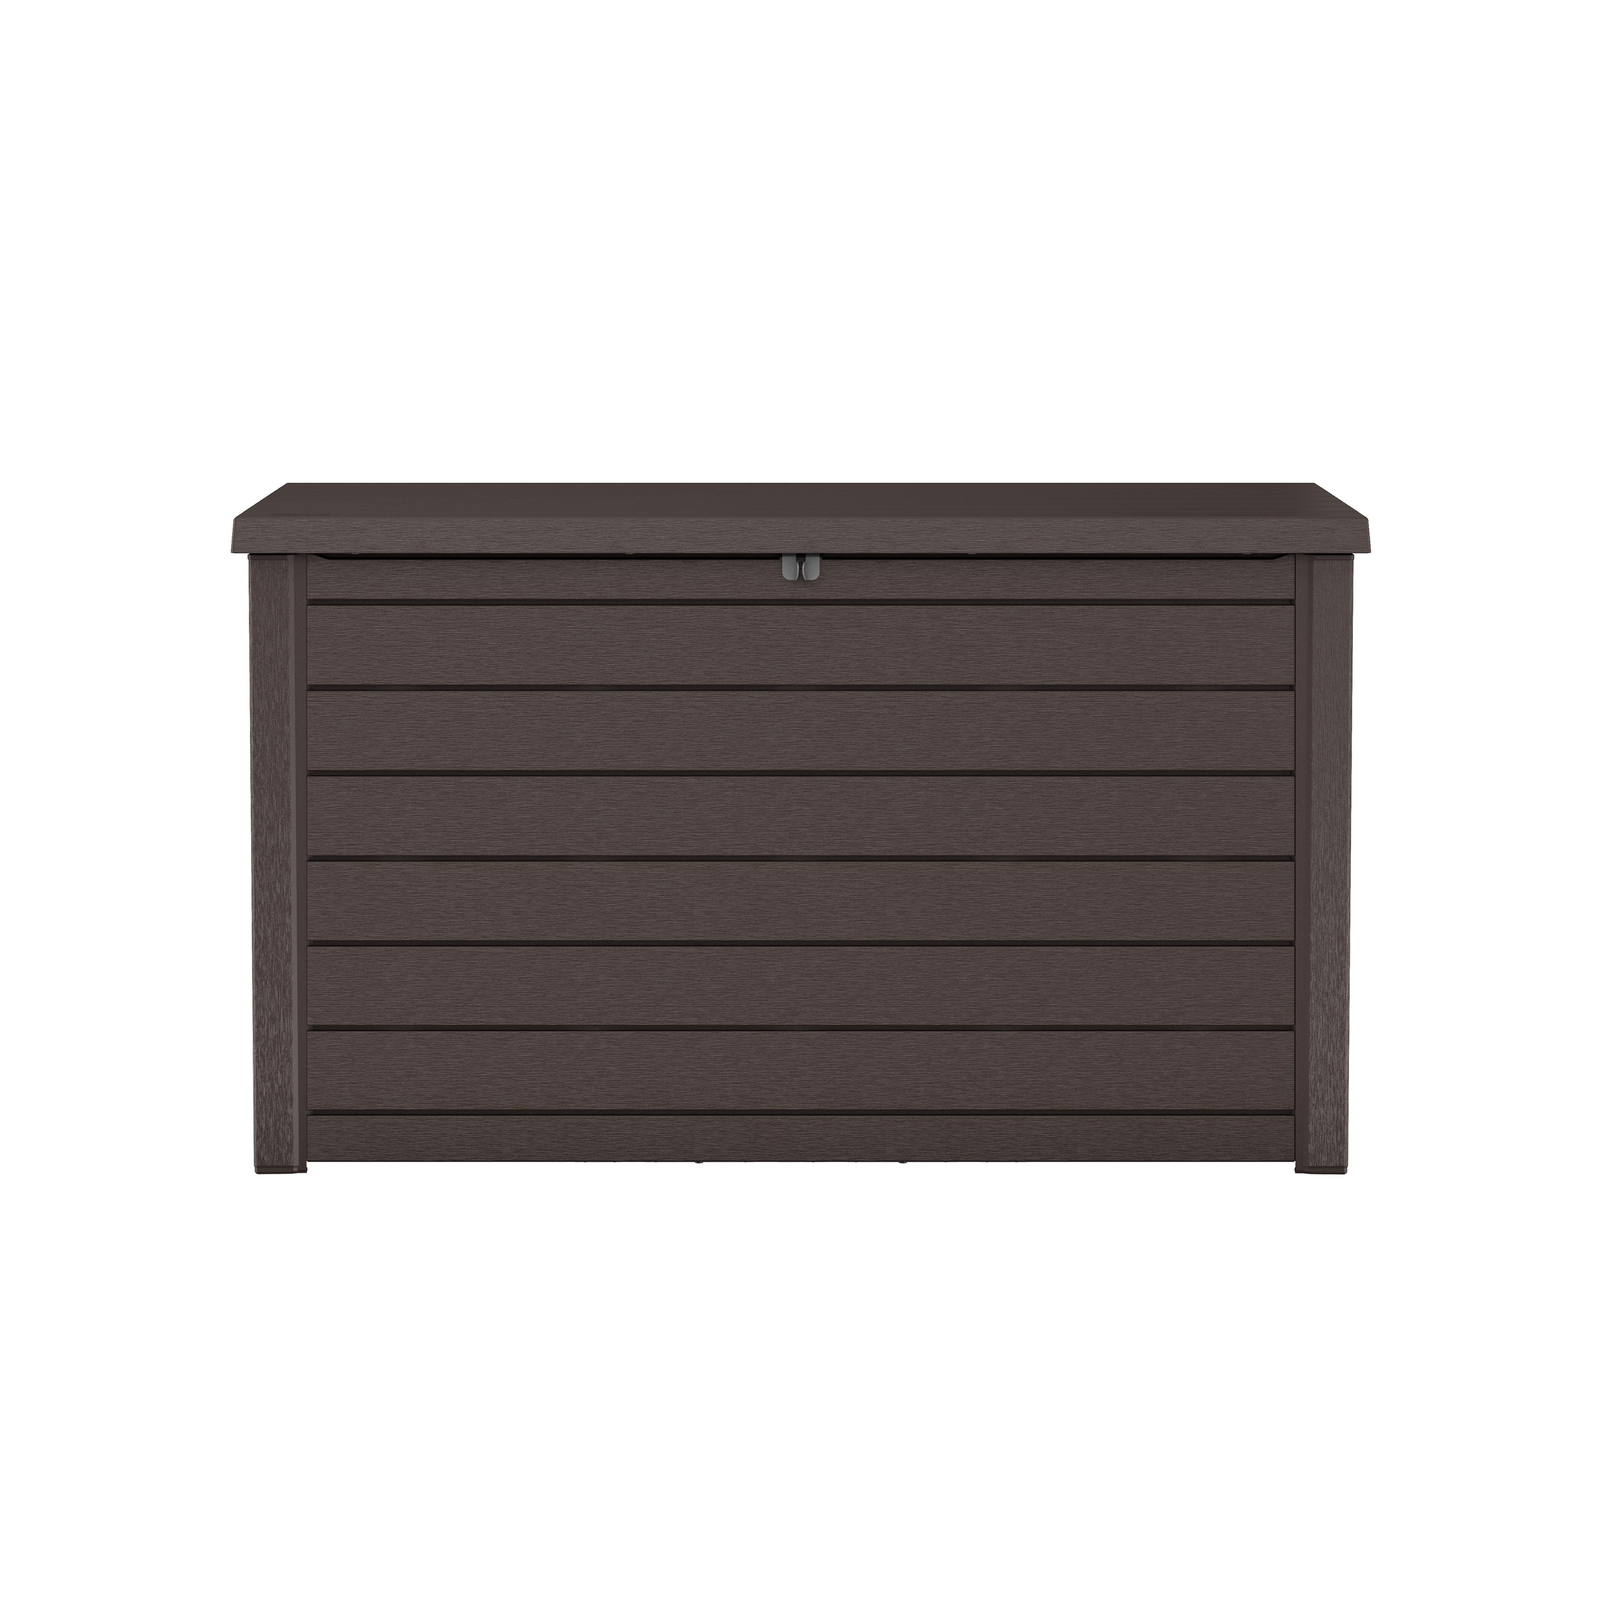 Keter XXL Deck Storage Box in Brown Outdoor Storage Keter   